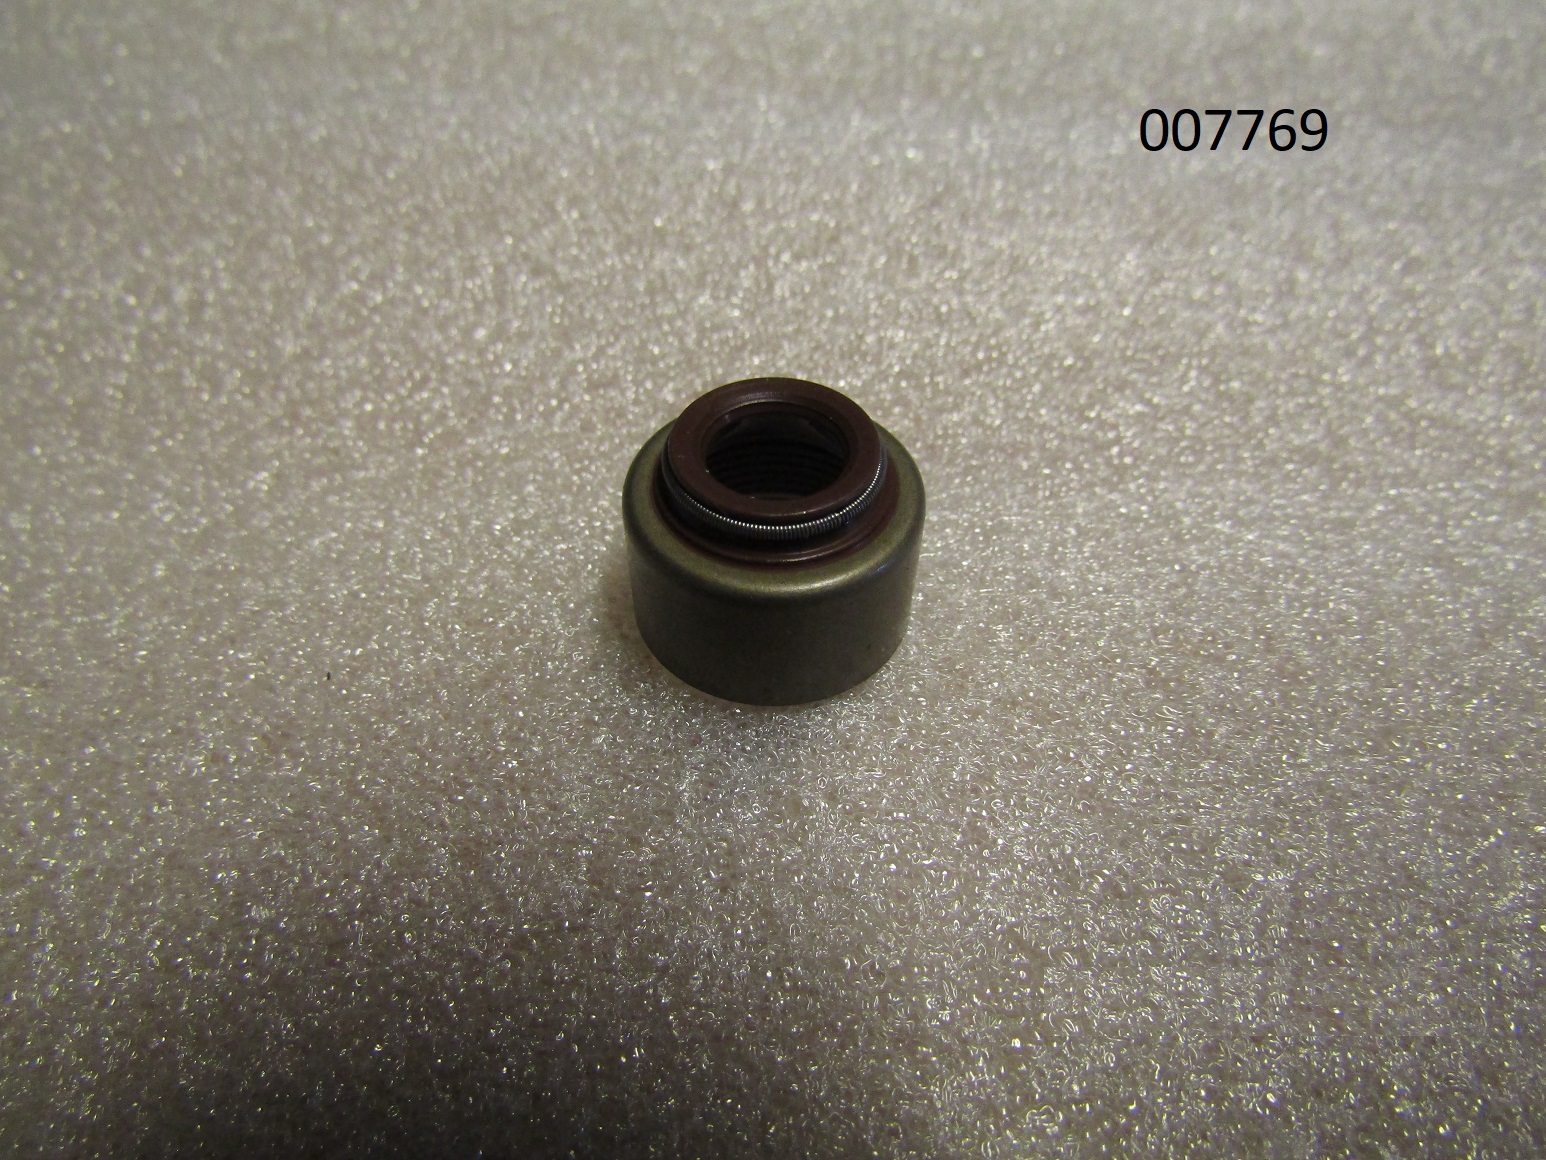 Колпачок маслосъемный TBD 226B-6D/Valve stem seal (0115 3875)